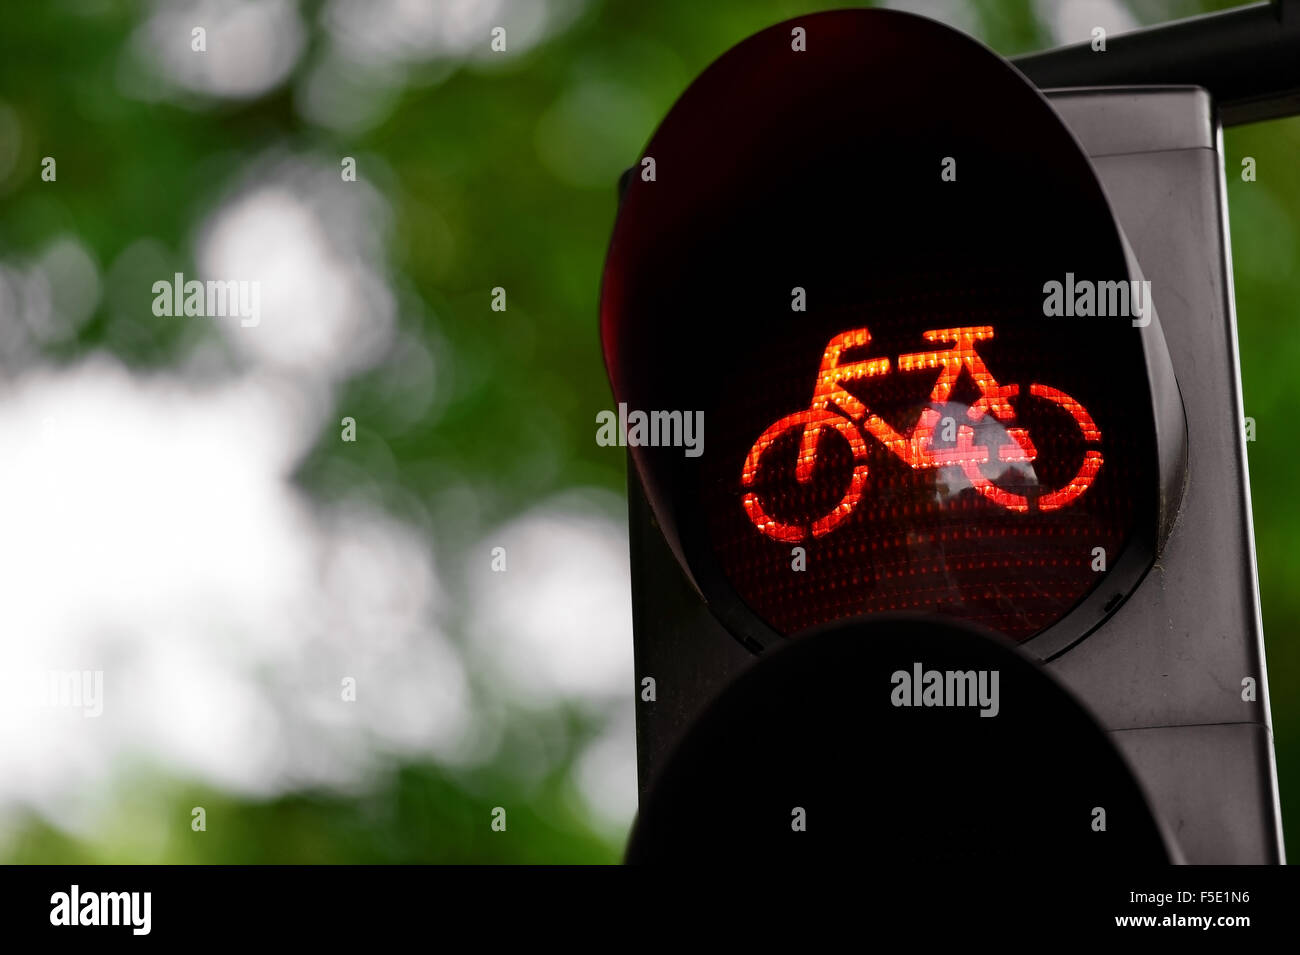 Detalle shot con una bicicleta semáforo cambia a color rojo Foto de stock